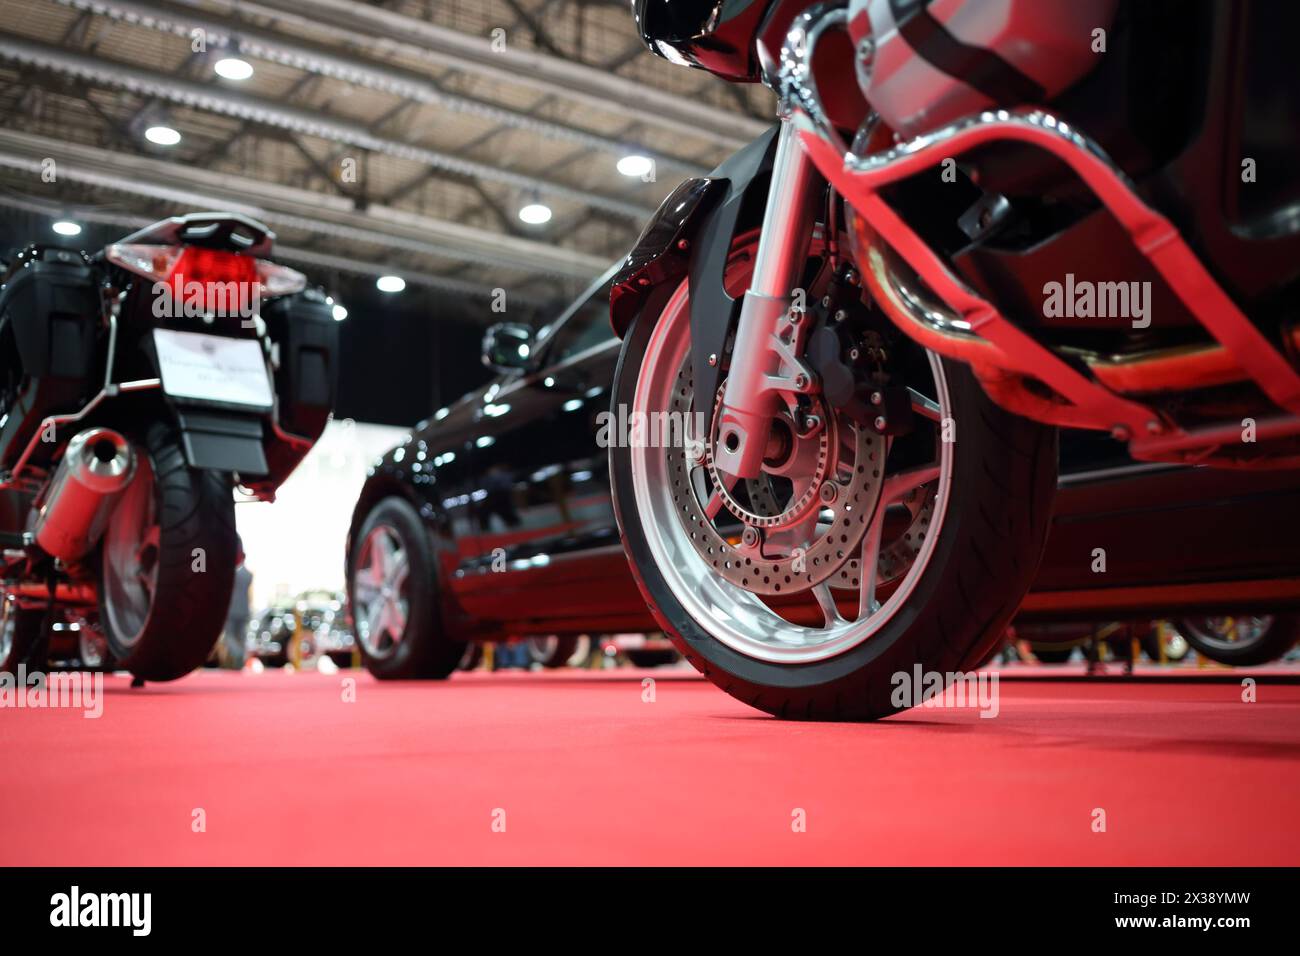 Schwarze Fahrräder für das Cordge, Auto auf rotem Teppich in der Ausstellung, Nahaufnahme Stockfoto